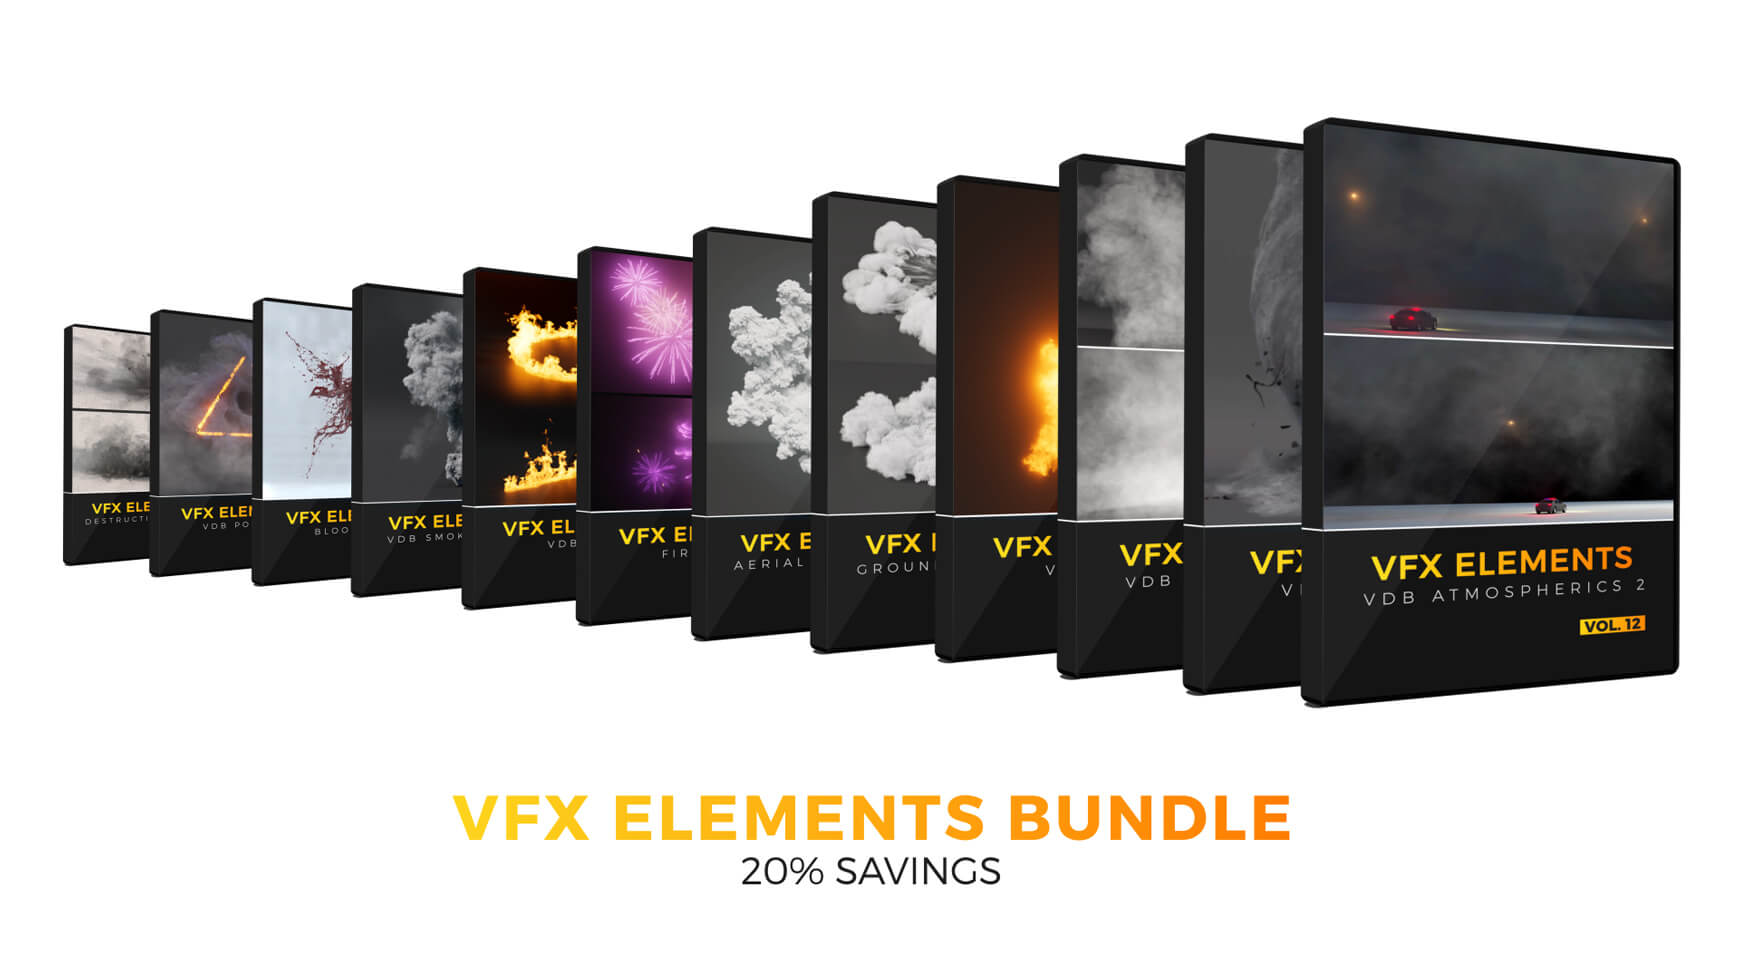 VFX Elements Volume 12 VDB Atmospherics 2 Elements Bundle